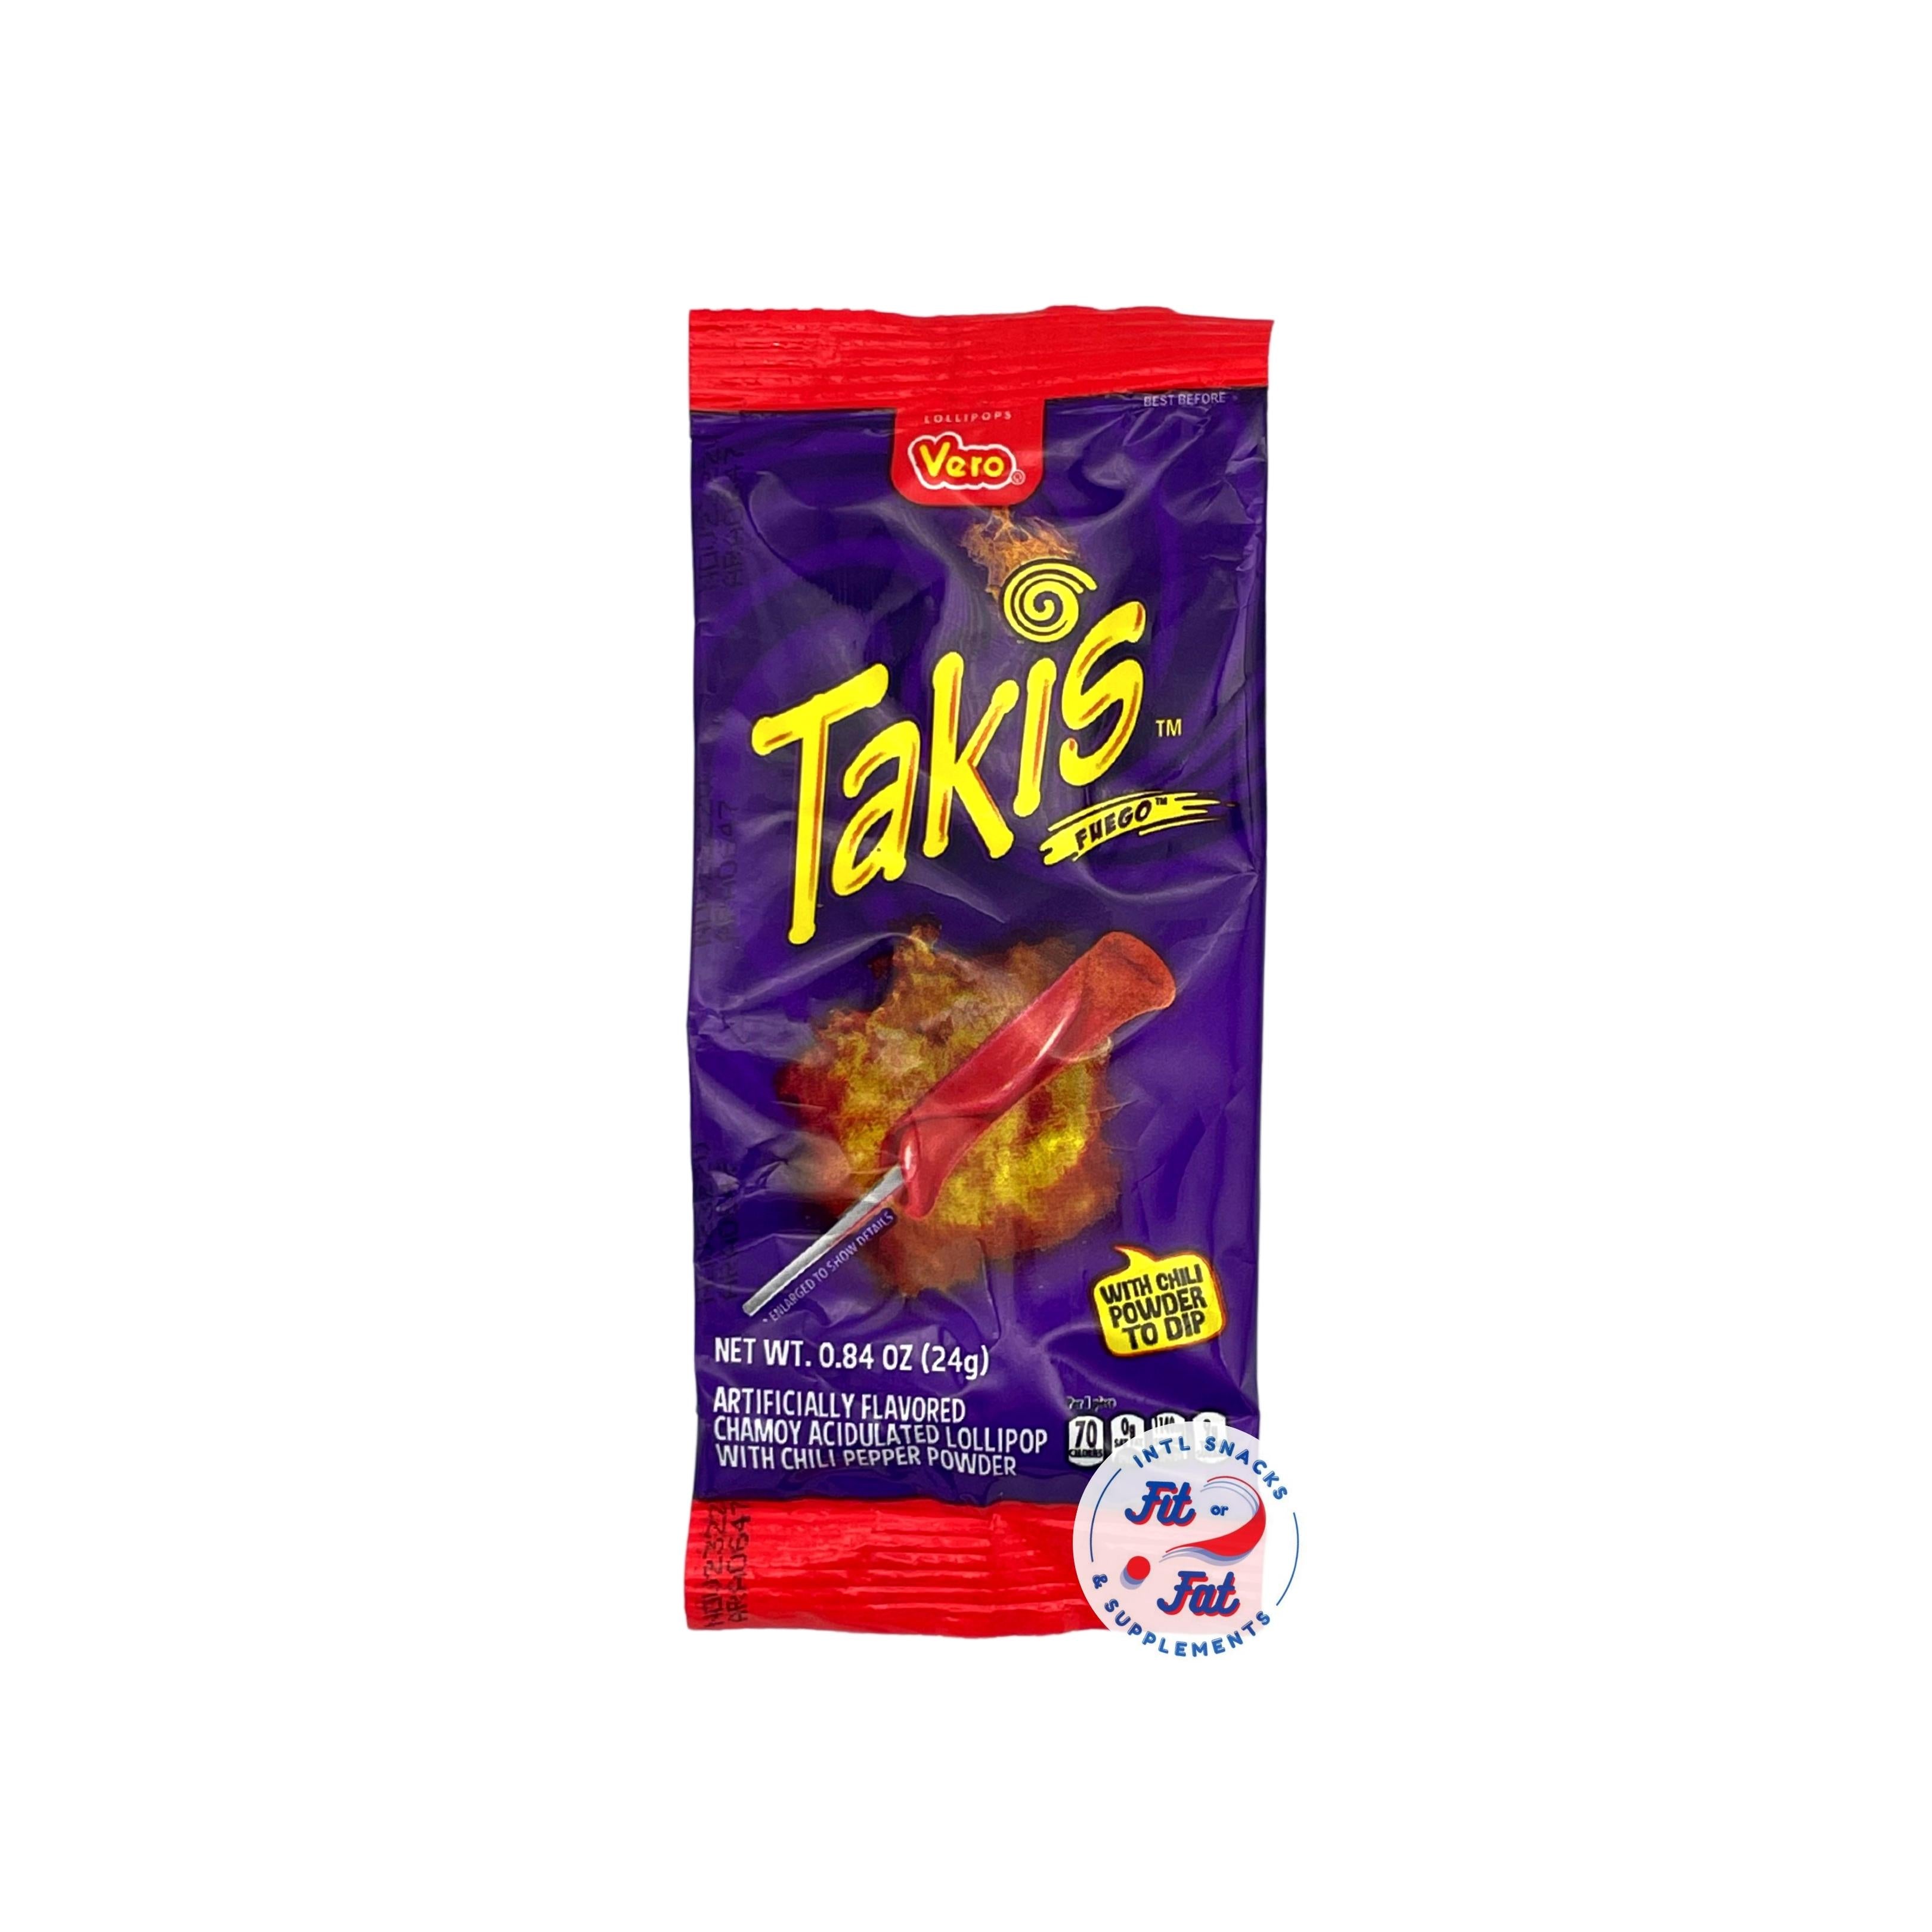 Takis - Fuego – Acquista Online al Miglior Prezzo - Fit or Fat Market